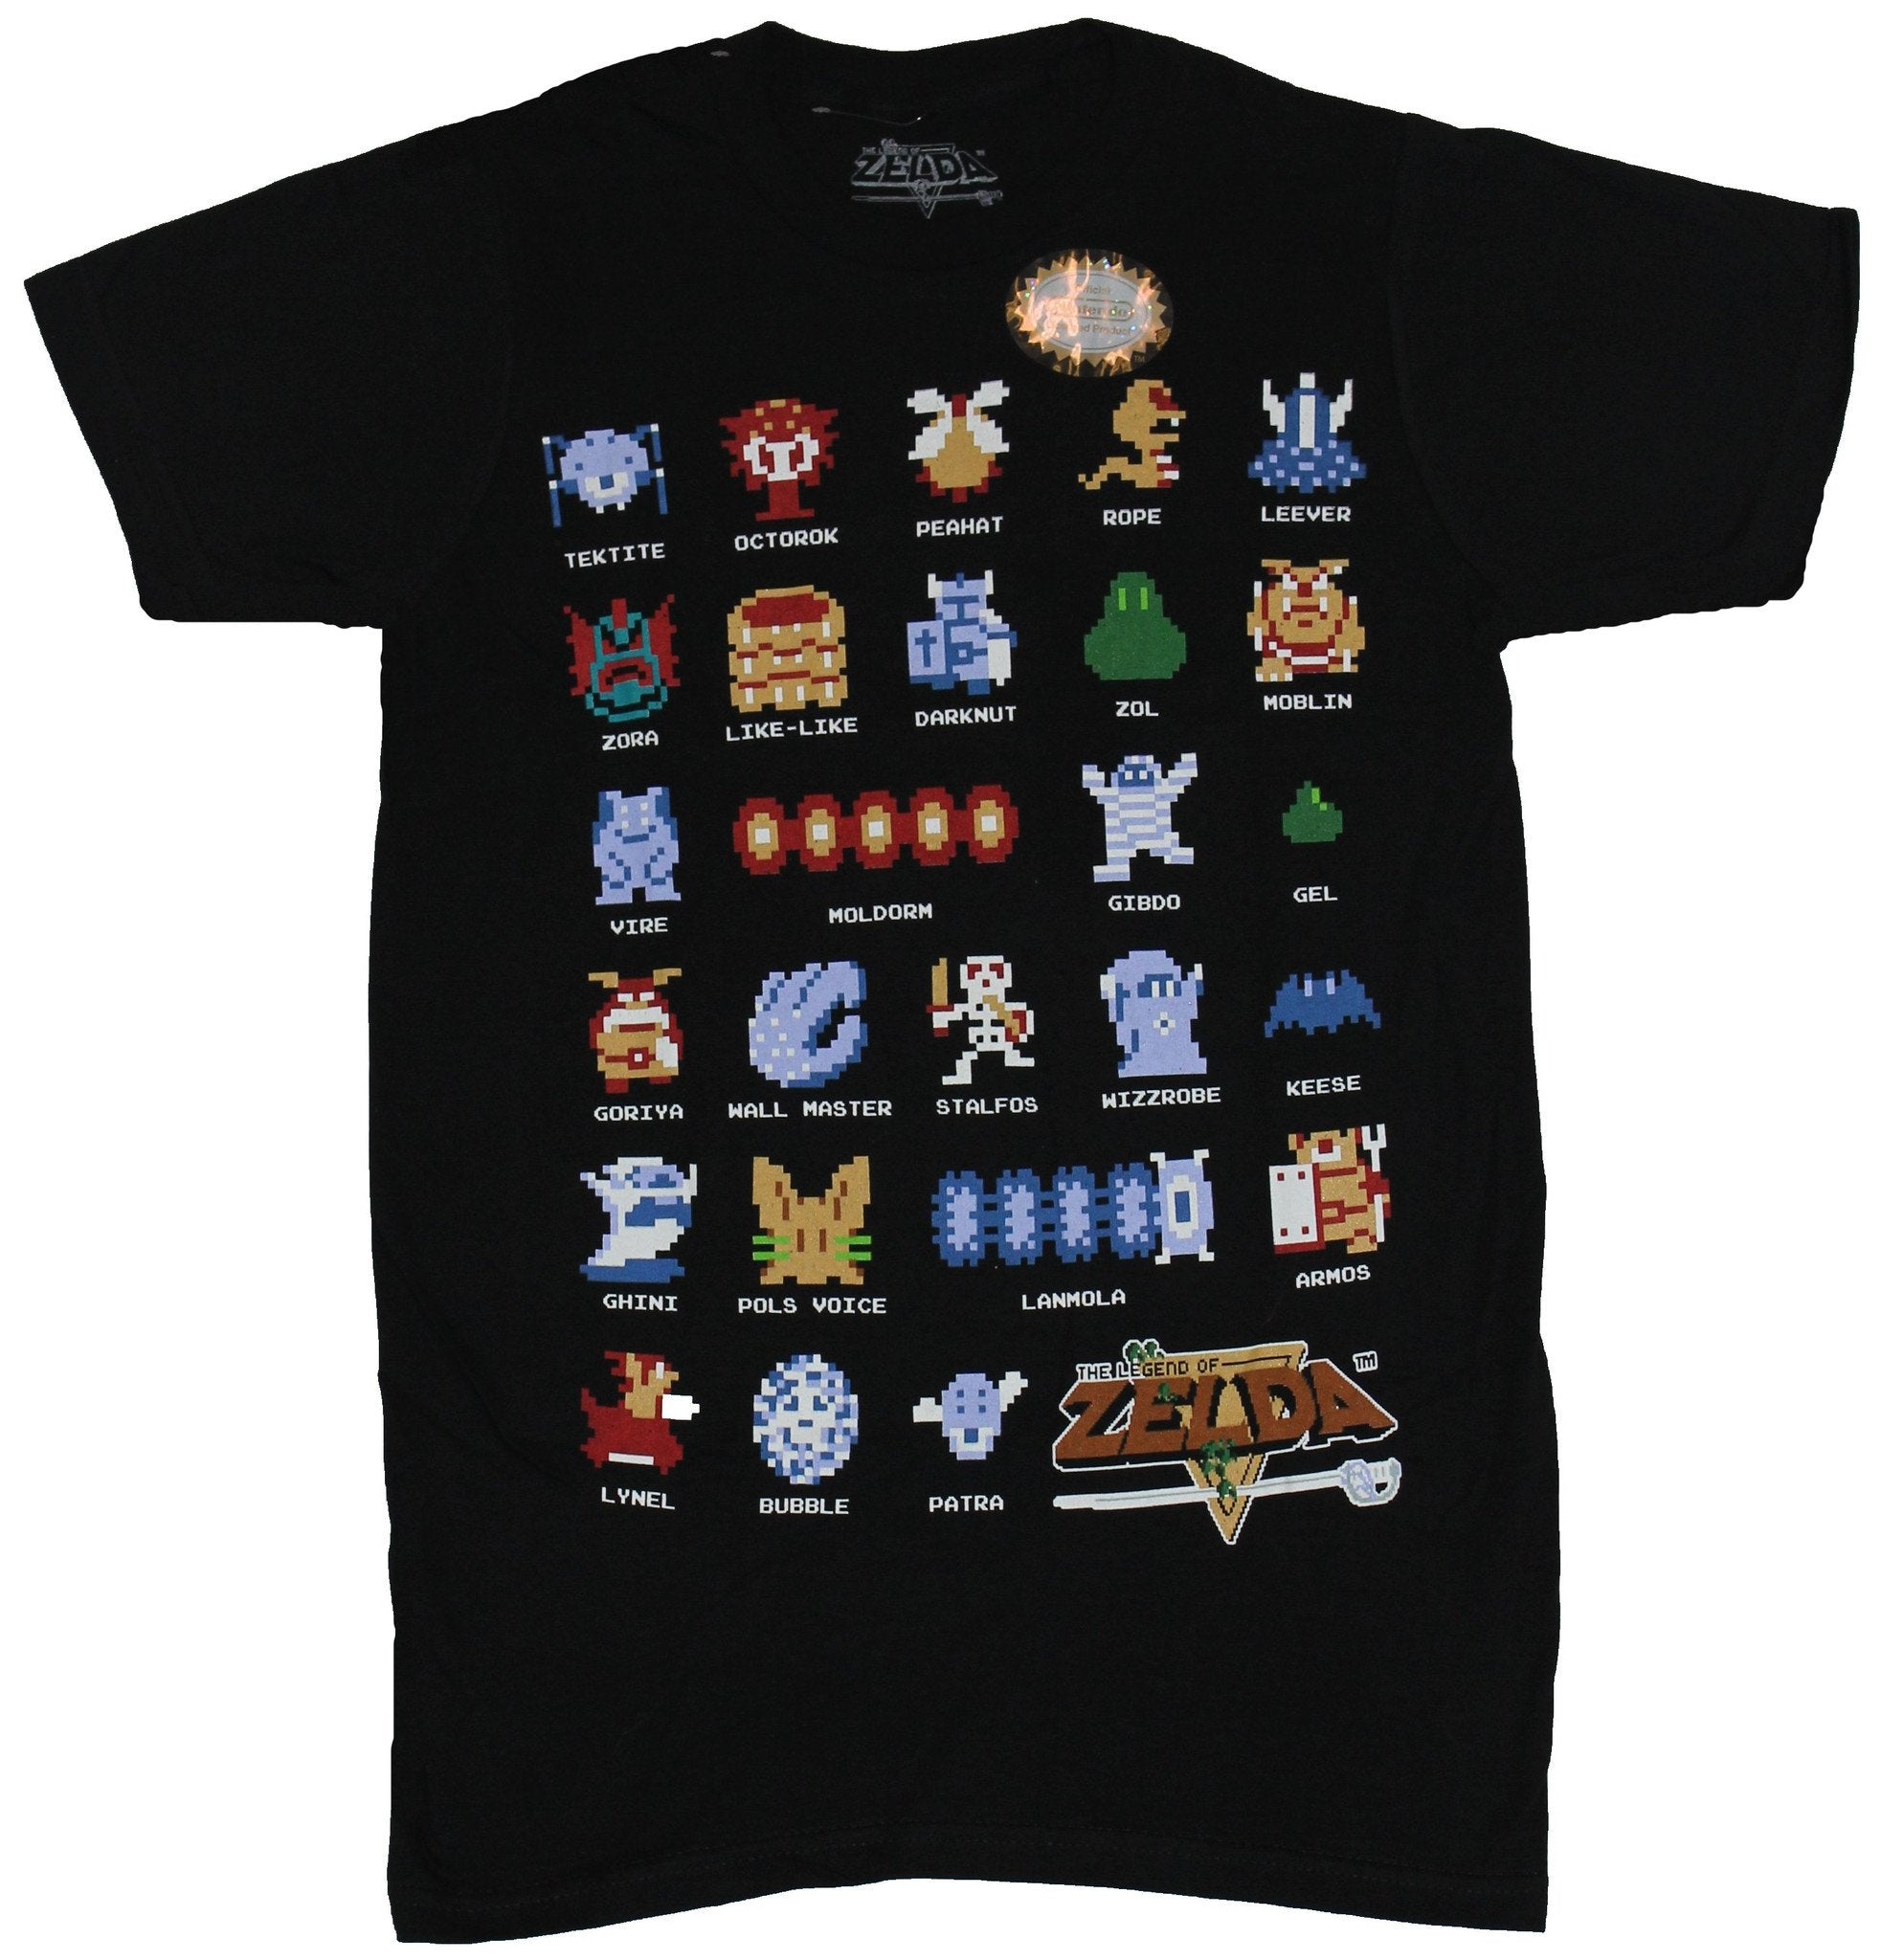 Leyends Never Die V.2 - Legend of Zelda T-Shirt - The Shirt List